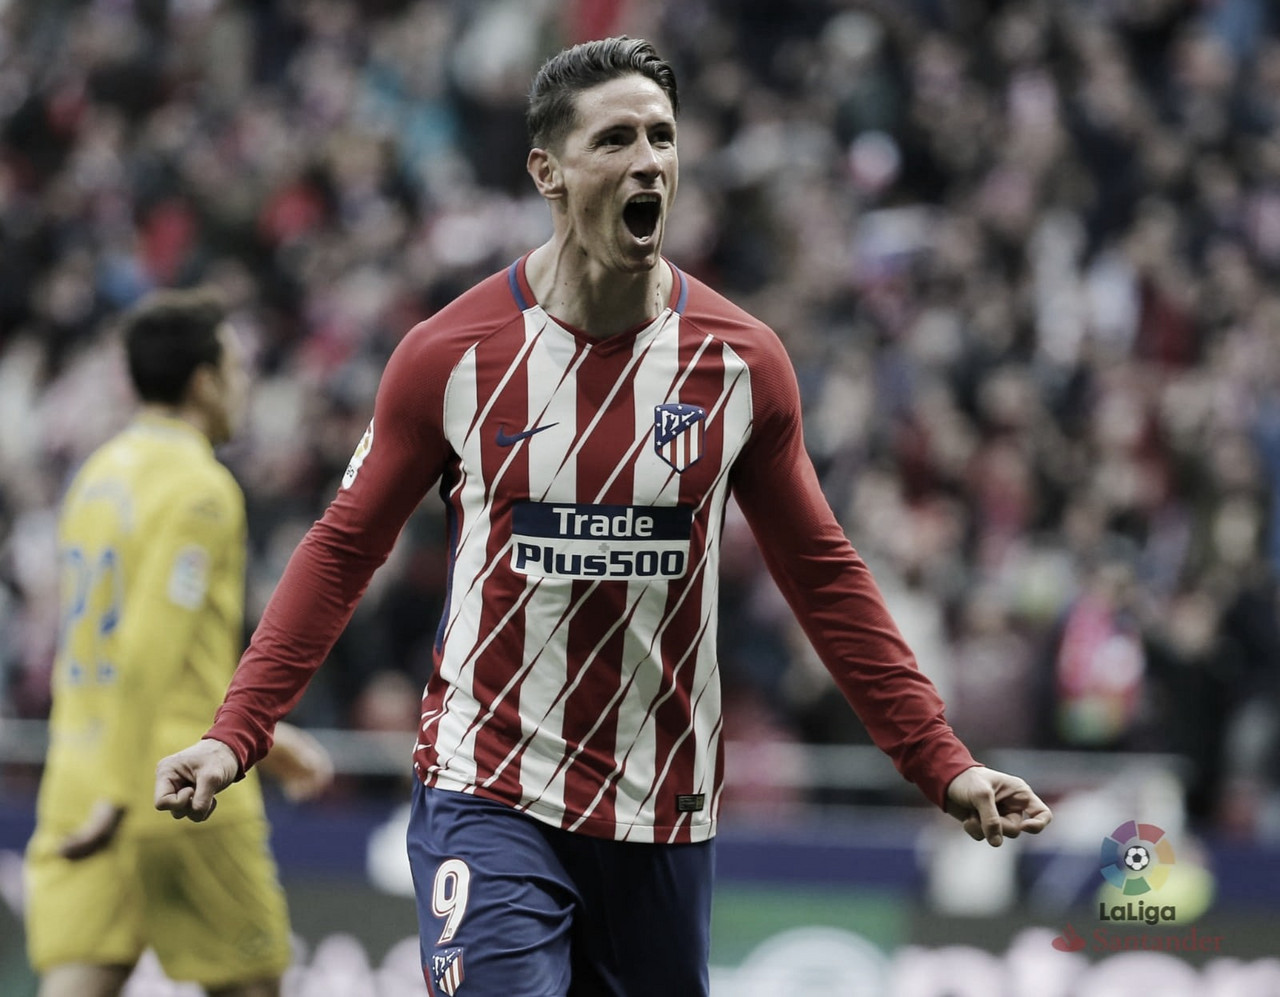 Torres cuelga las botas sin marcarle ningún gol de jugada al
Rayo Vallecano